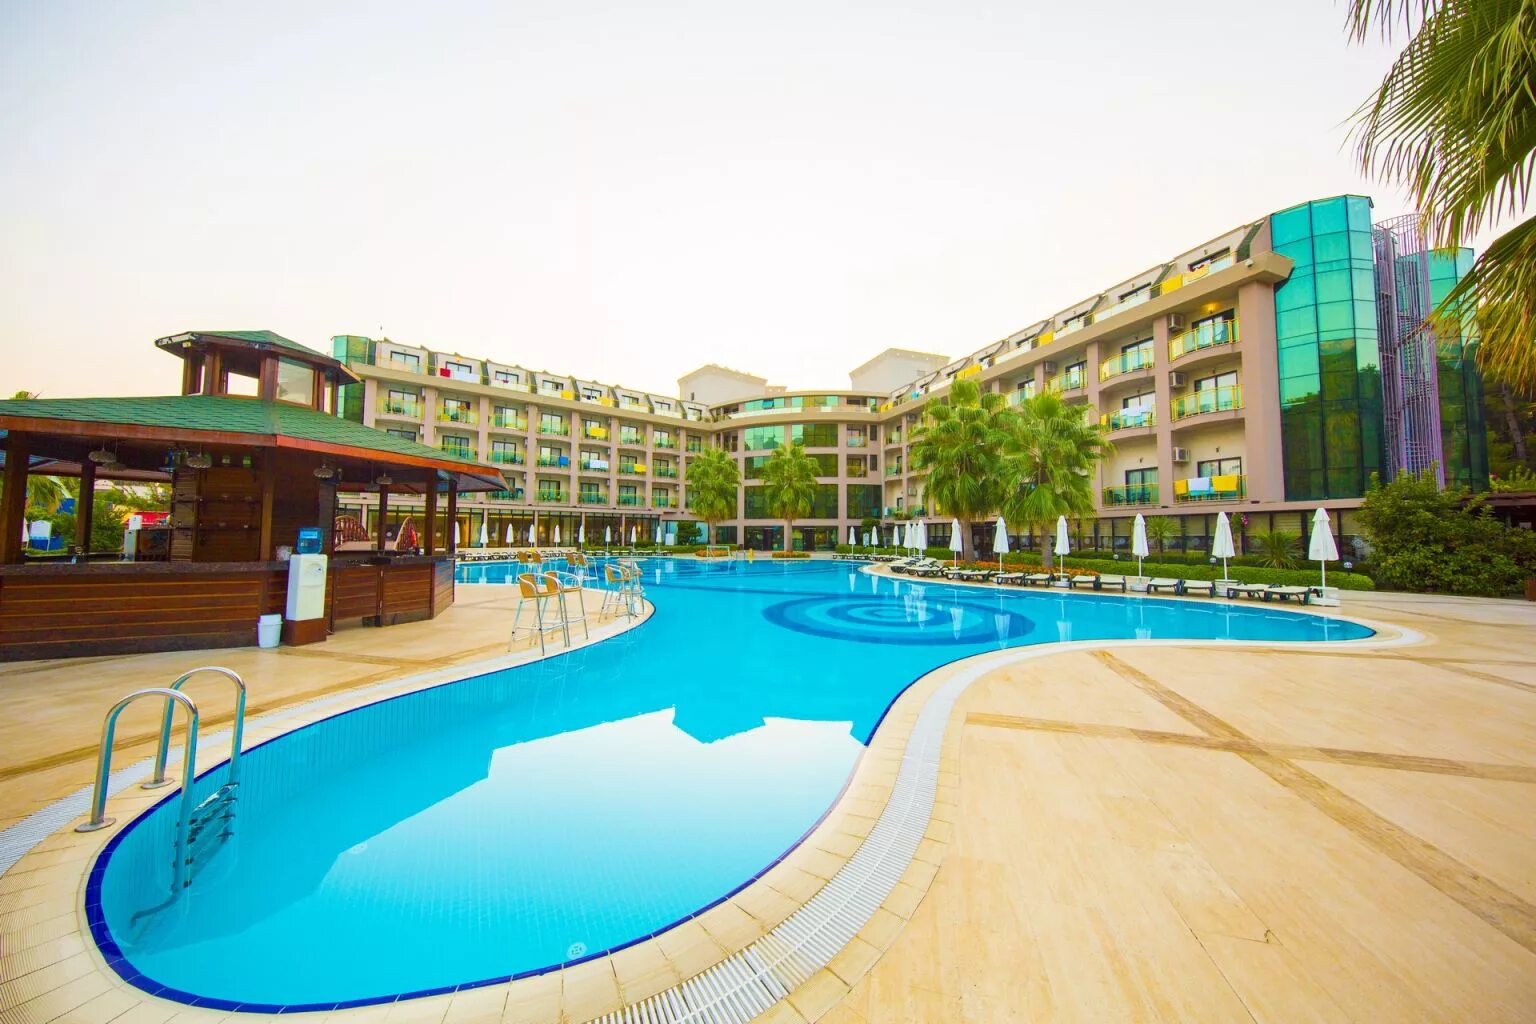 Отель Eldar Resort 4 Турция. Eldar garden resort hotel 4 турция